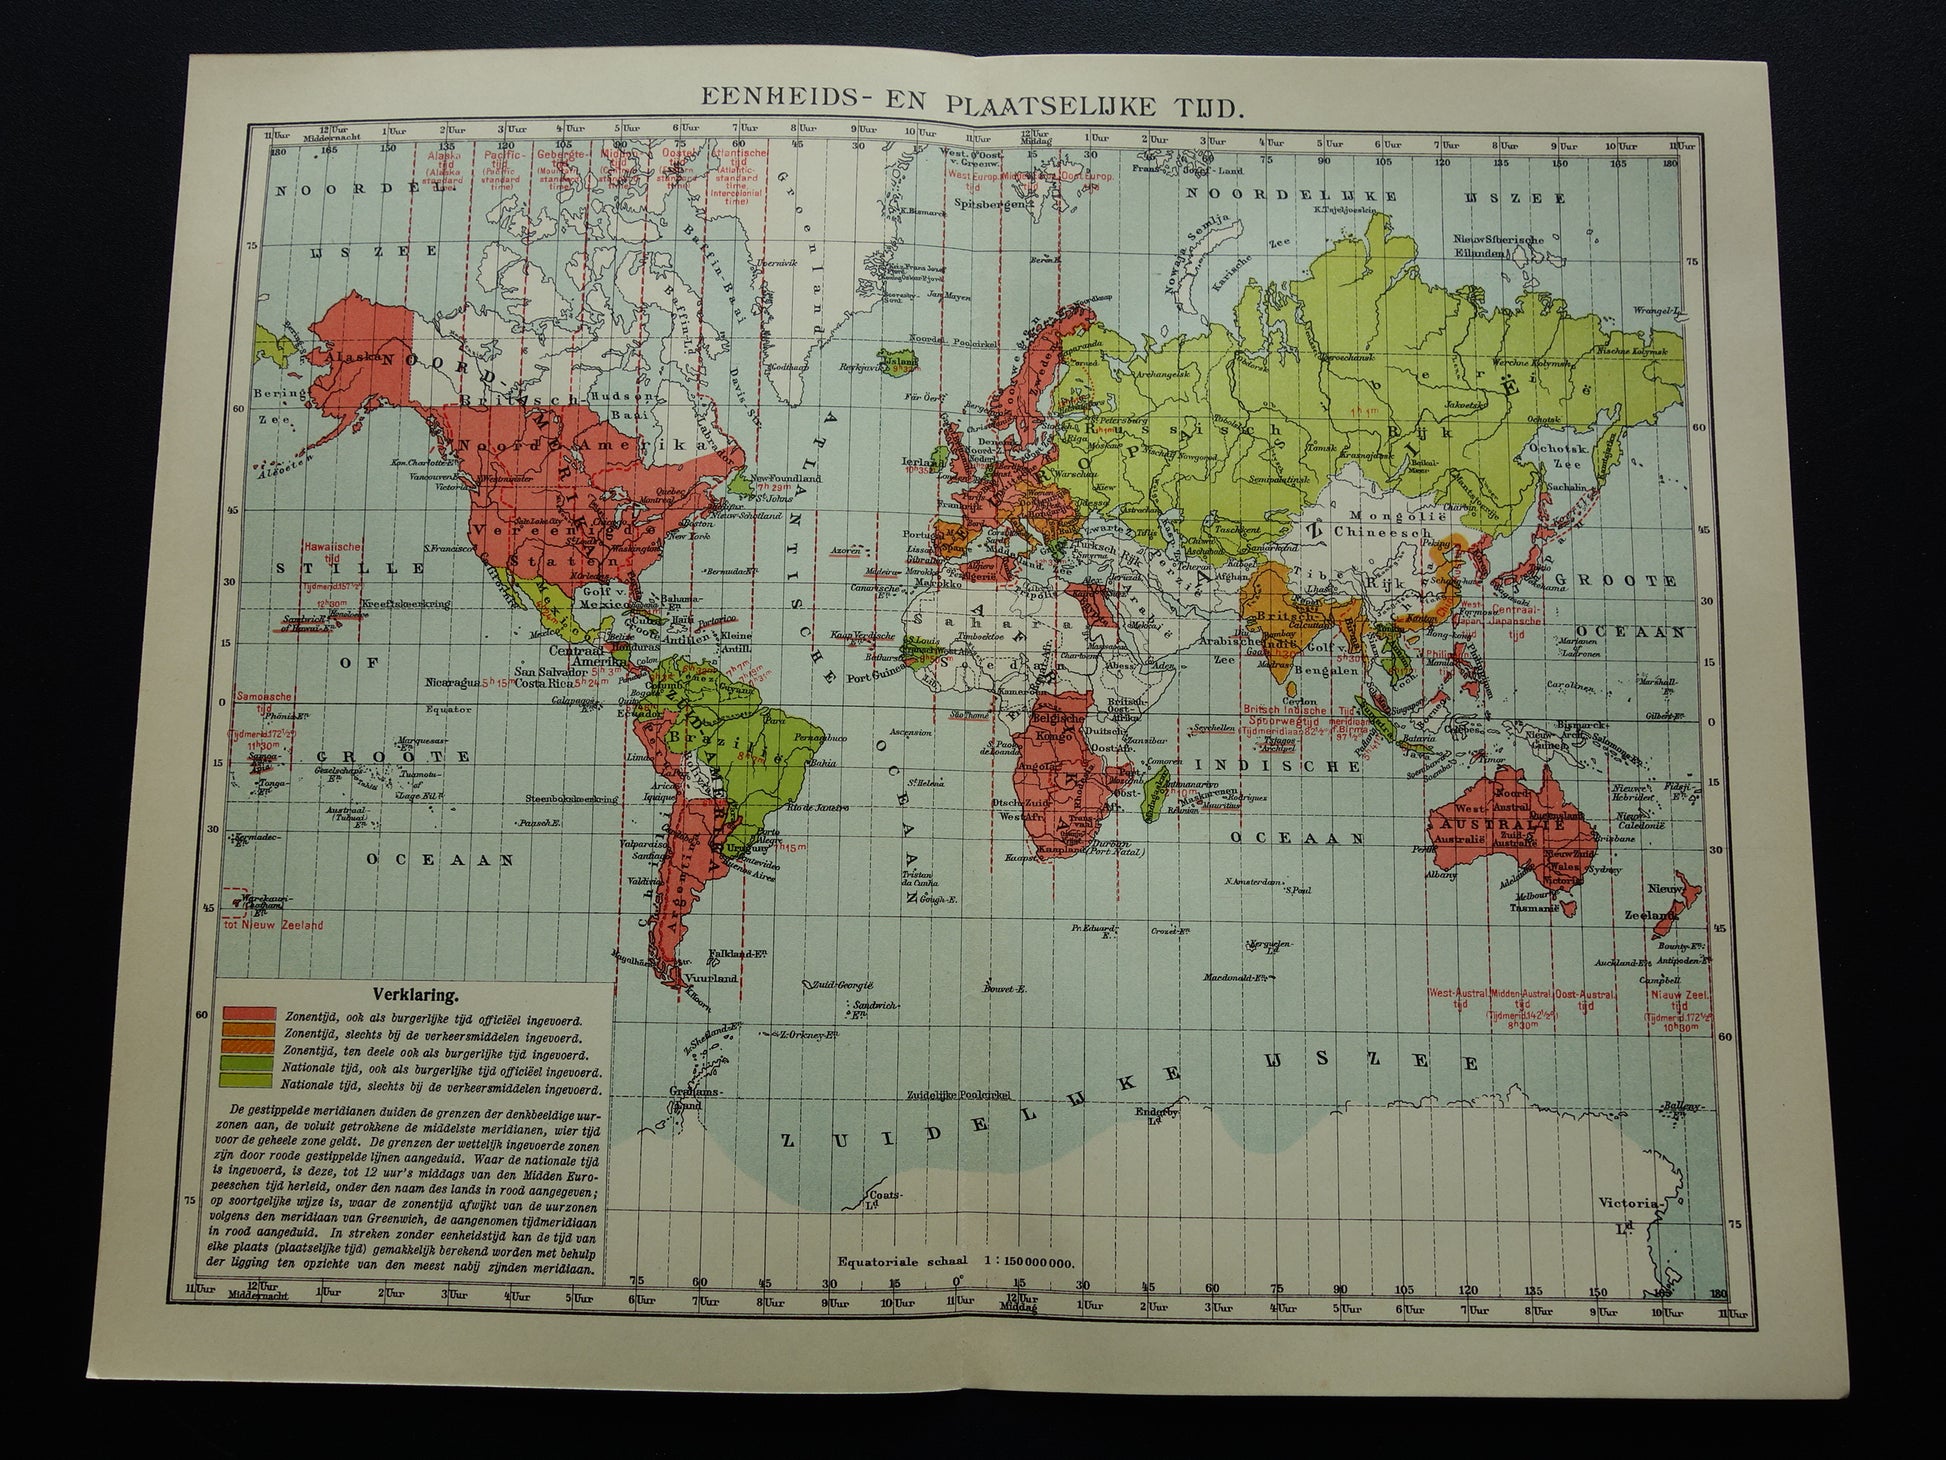 WERELDKAART oude kaart van de wereld met tijdzones 1907 originele antieke Nederlandse landkaart historische kaarten wintertijd zomertijd datumgrens